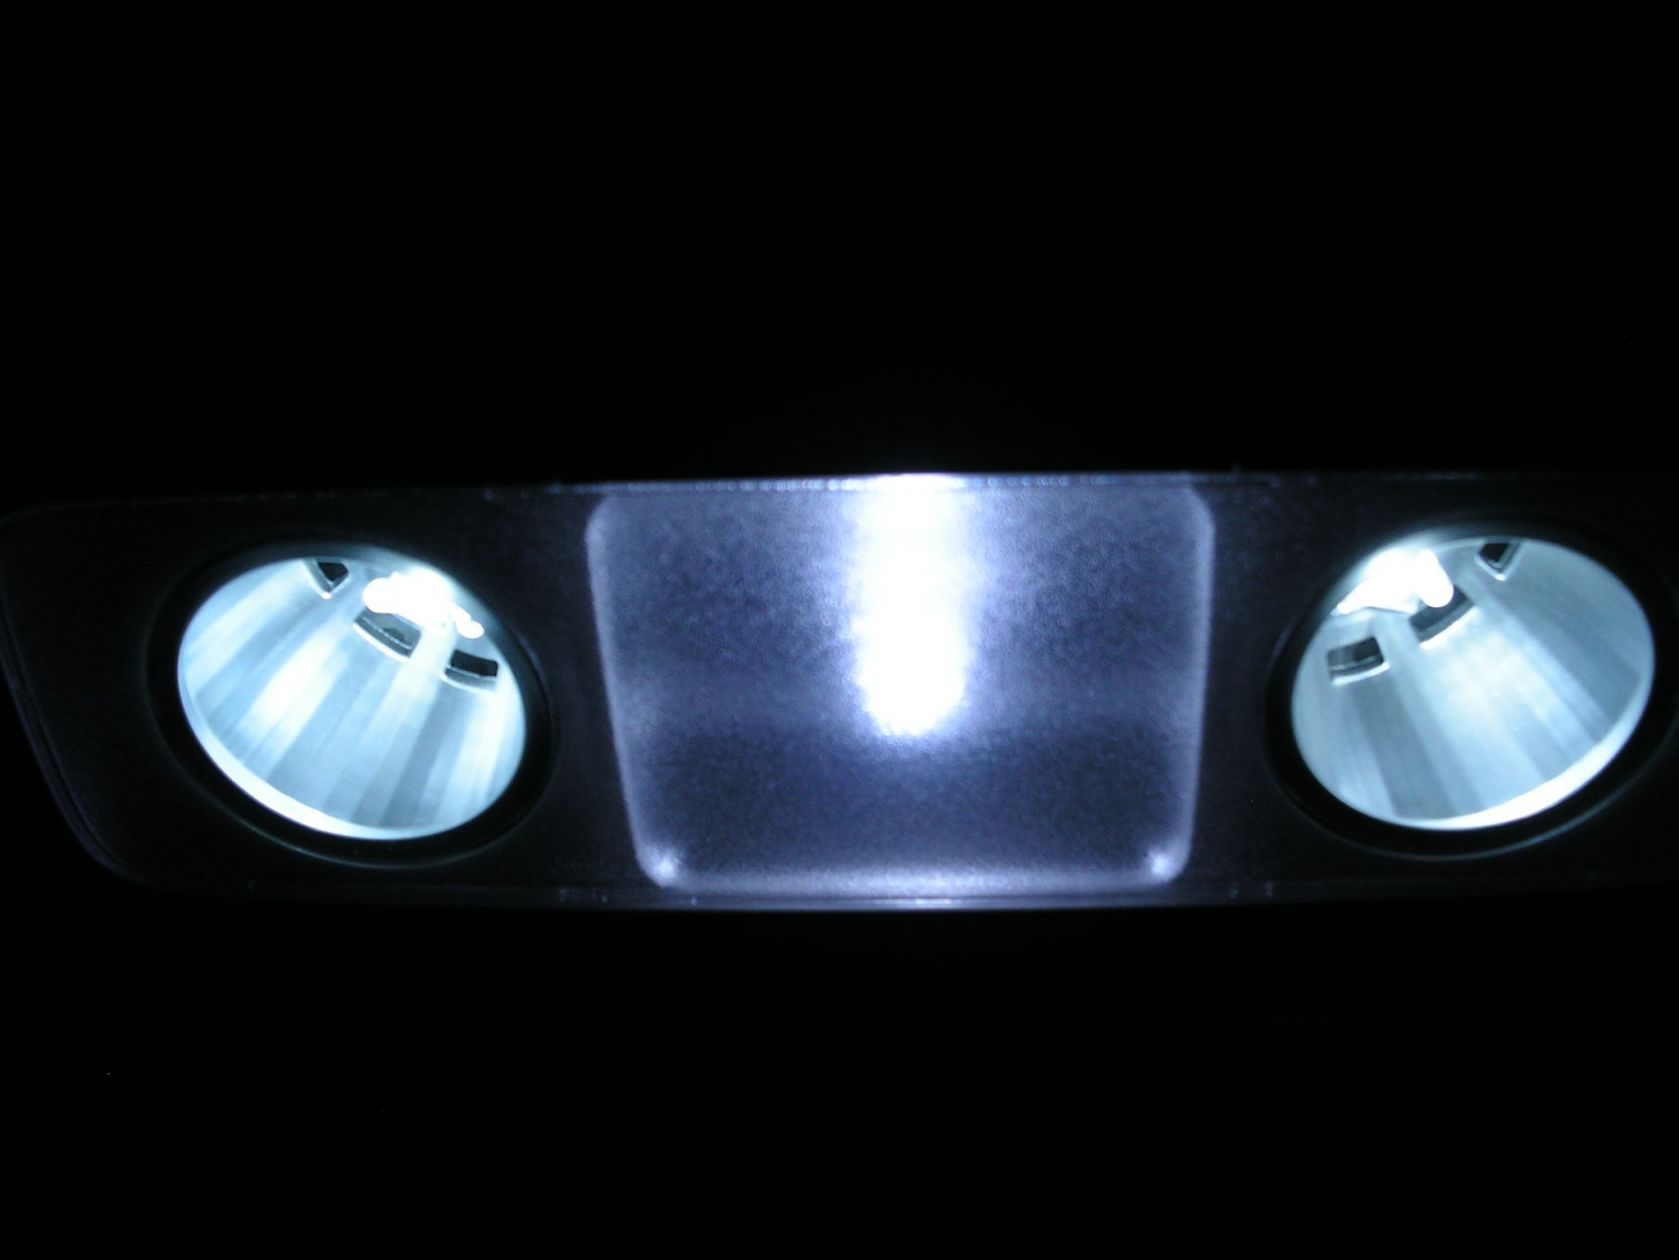 Plafoniera posteriore
Lampada centrale: 3 led centrali
Lampade laterali: 1 red centrale e 4 radiali
